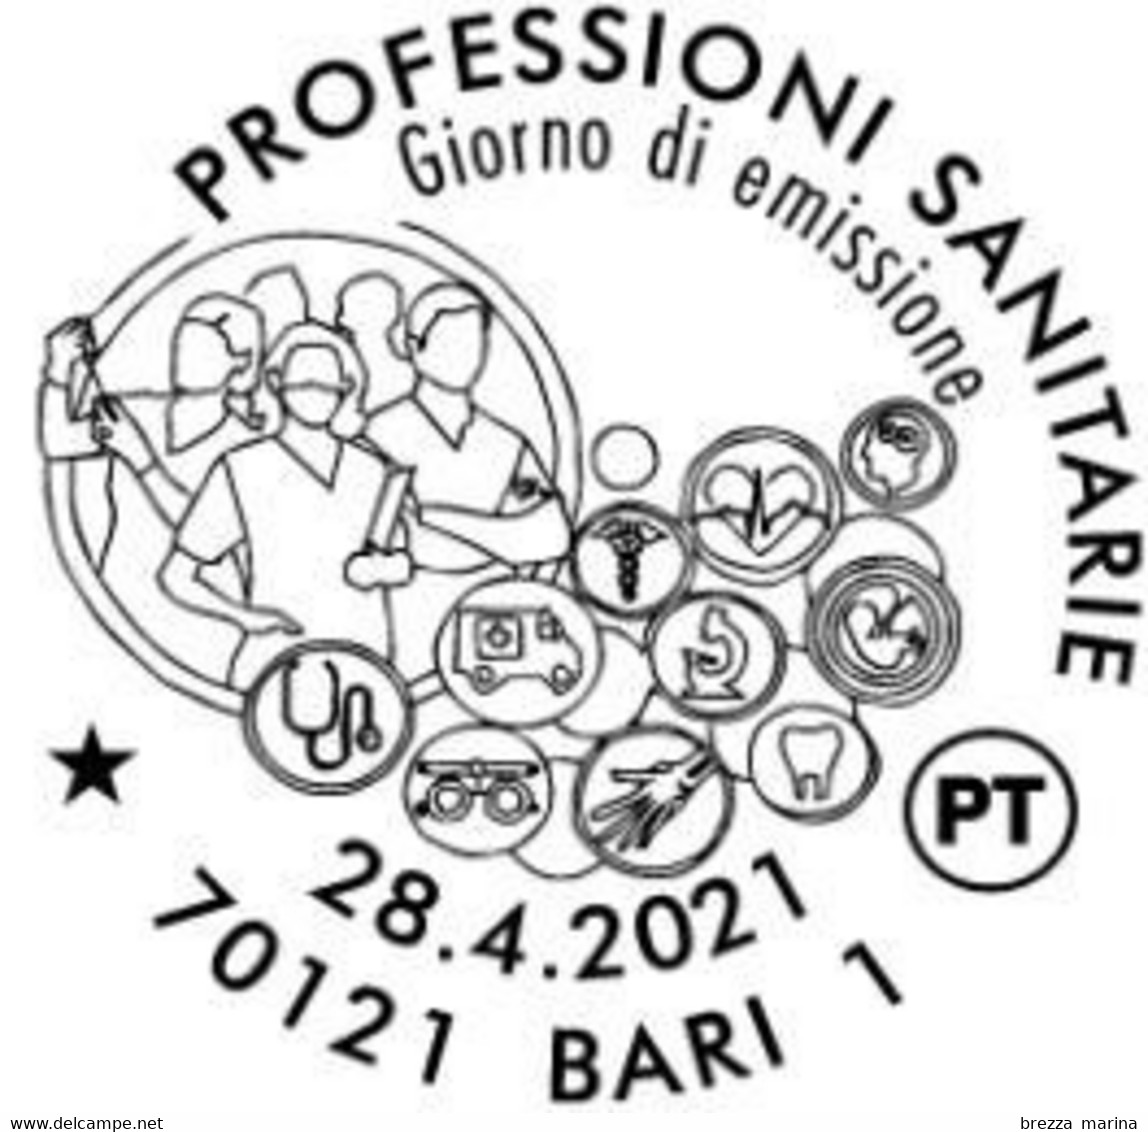 Nuovo - MNH - ITALIA - 2021 - Professioni Sanitarie – Sagome E Figure Stilizzate - B - Alfanumerico - 2021-...: Neufs